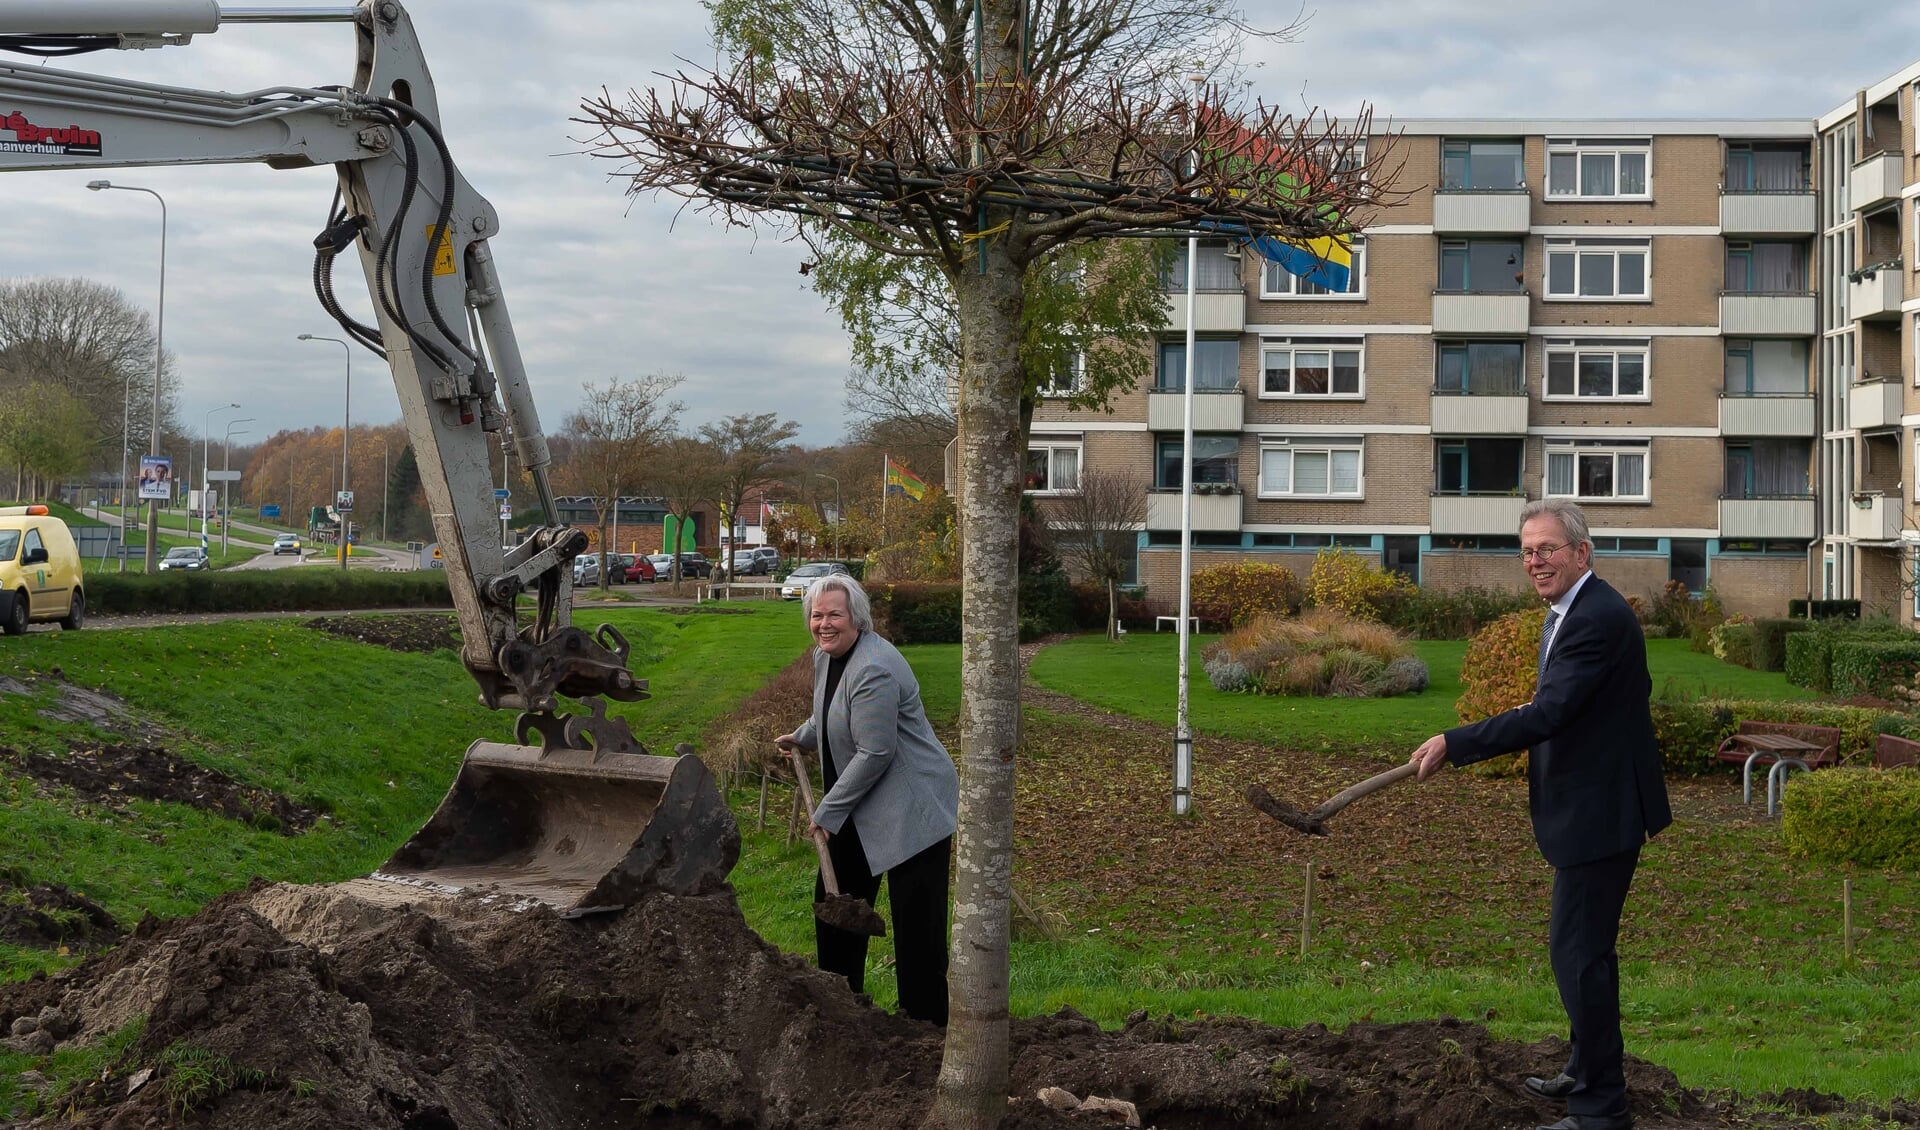 Burgemeesters Karen Heerschop en Don Bijl schepten mee bij het planten van de verbindingsboom tussen Beemster en Purmerend. 